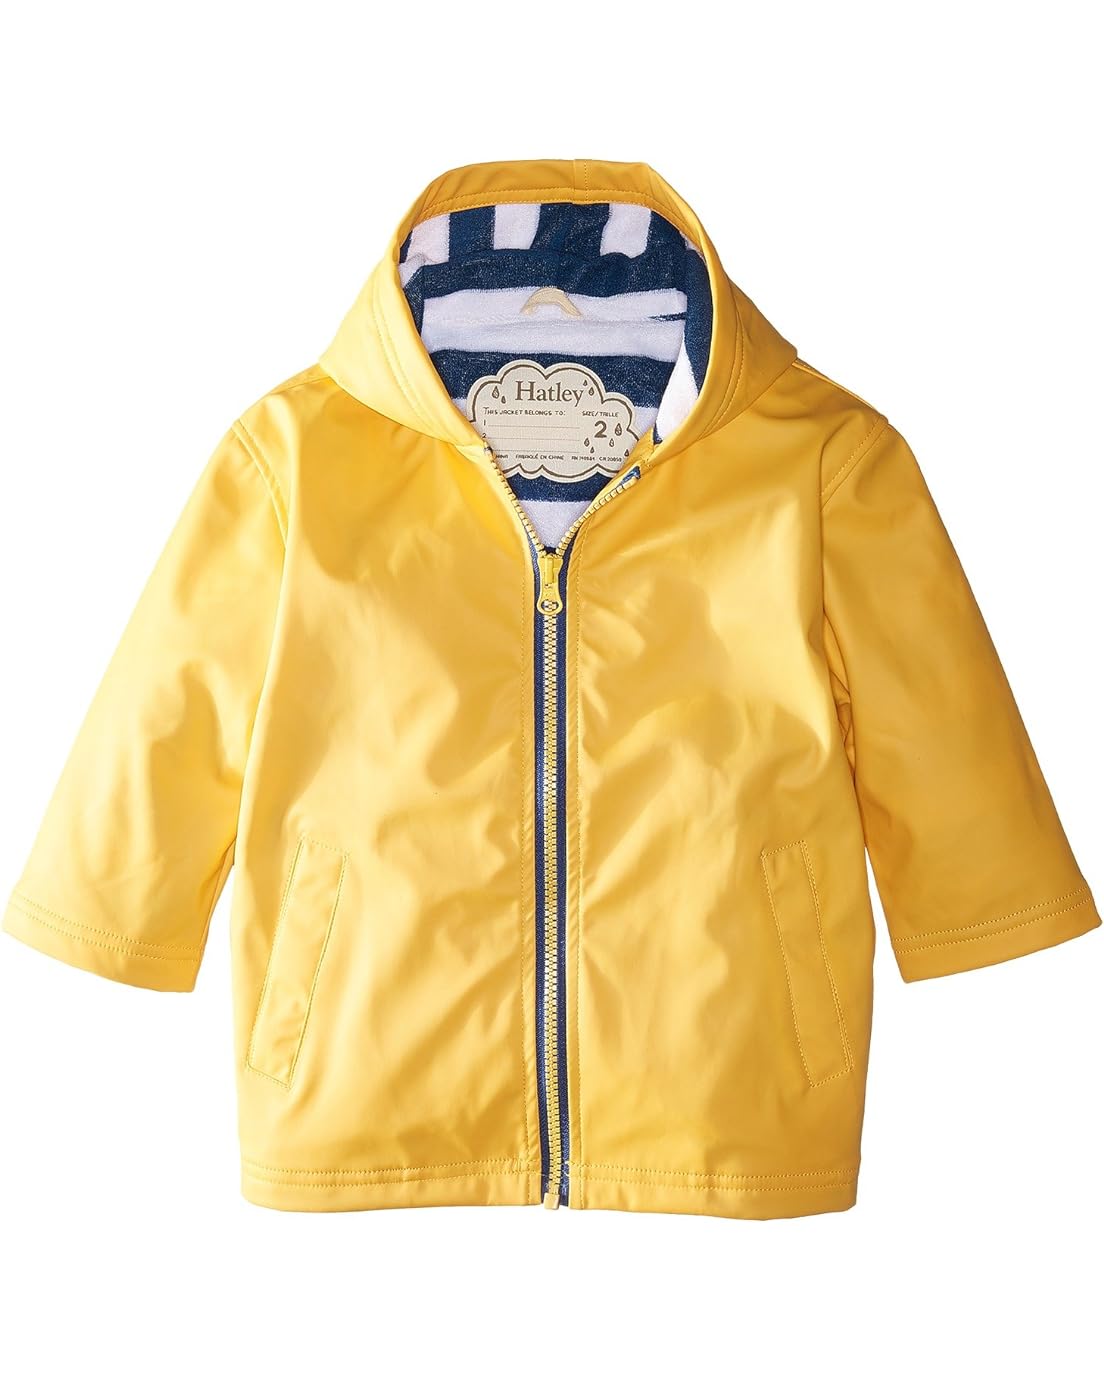 해틀리 Hatley Kids Yellow with Navy Stripe Lining Splash Jacket (Toddler/Little Kids/Big Kids)